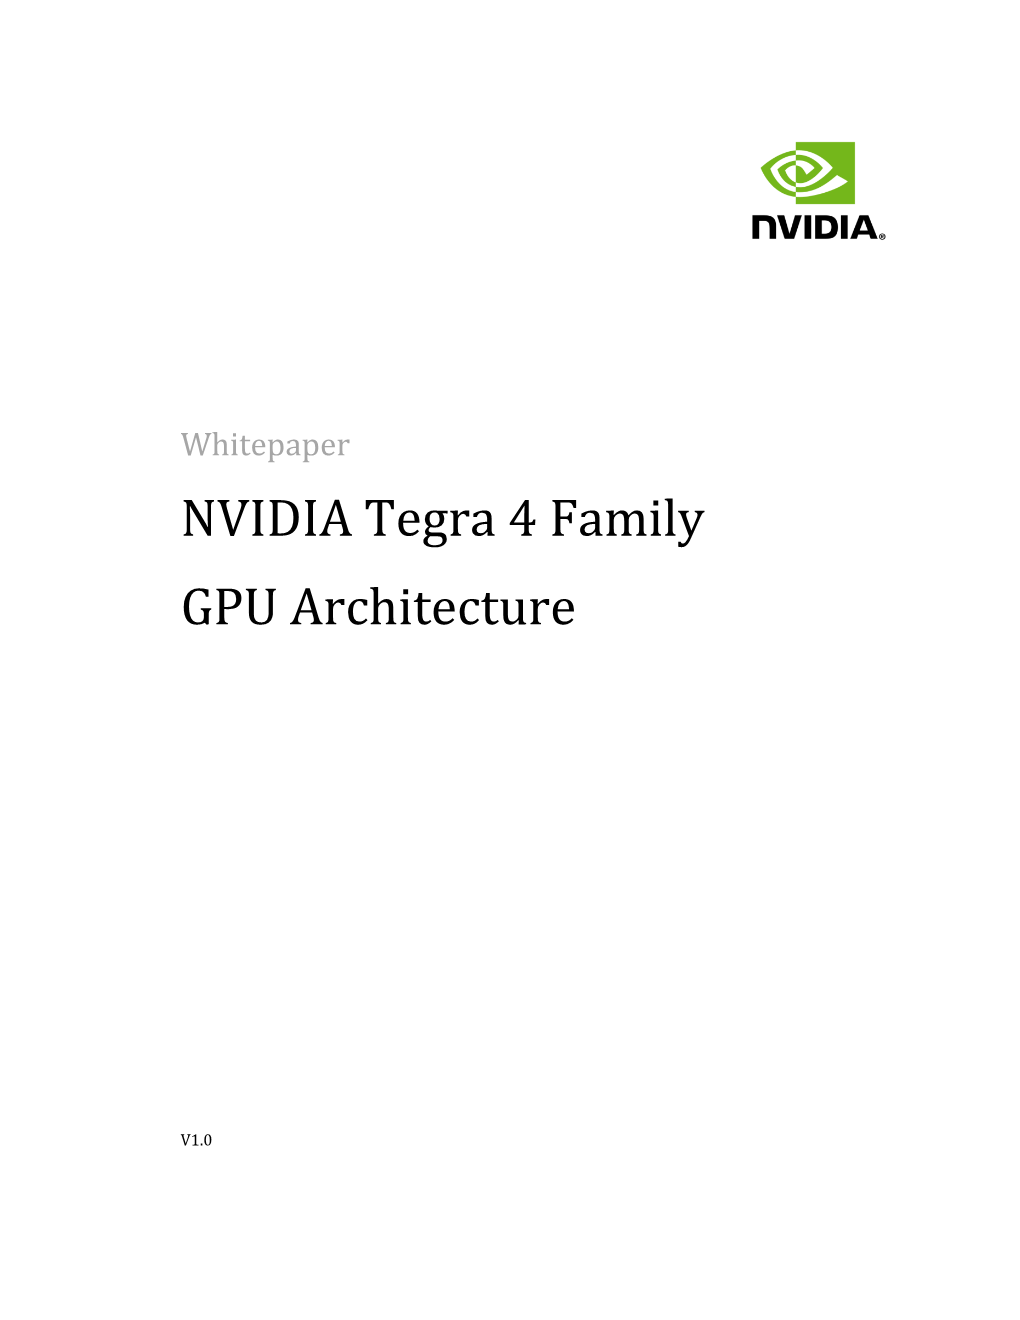 NVIDIA Tegra 4 Family GPU Architecture